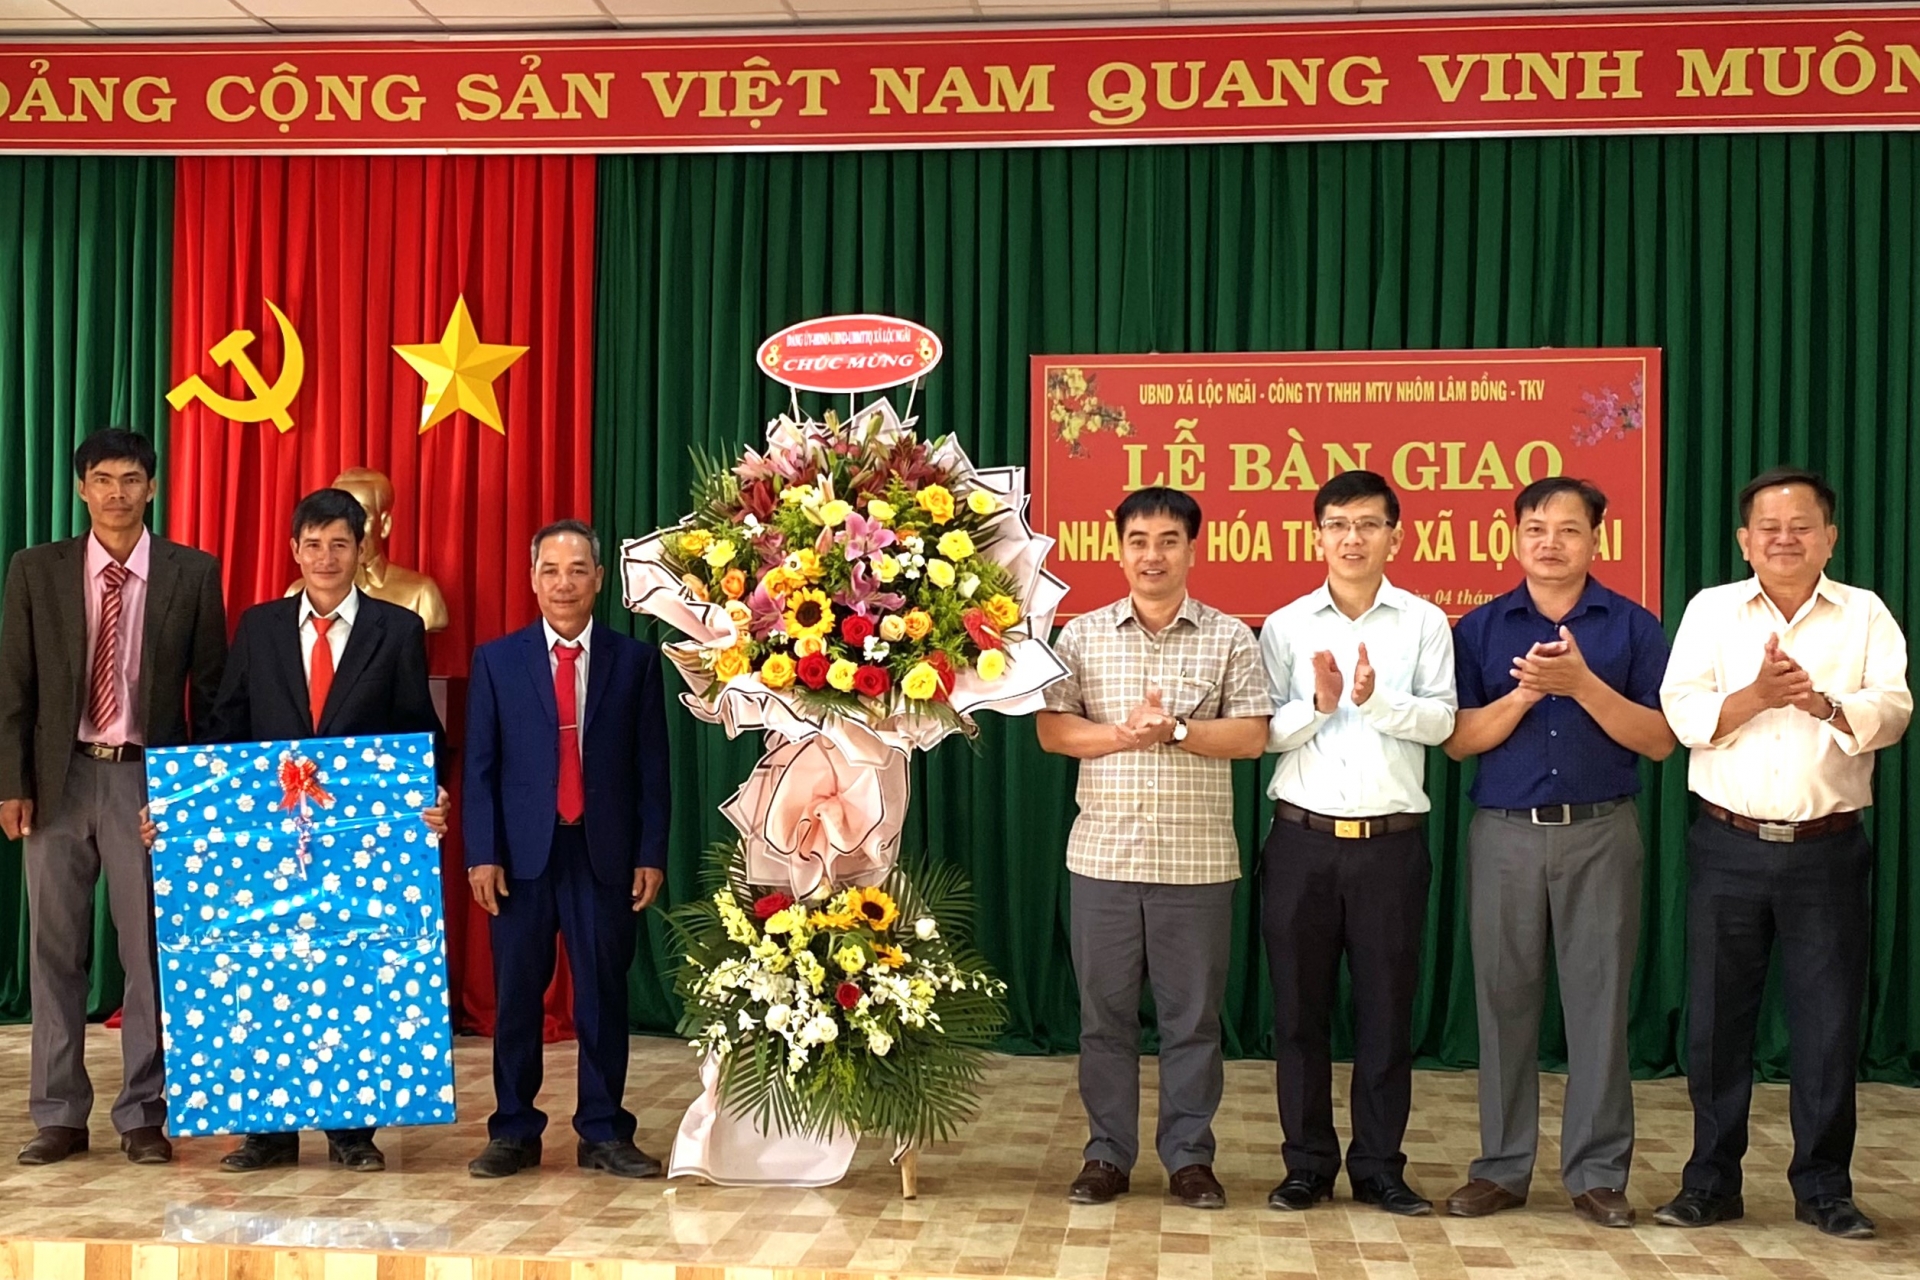 Công ty Nhôm Lâm Đồng và UBND xã Lộc Ngãi tổ chức khánh thành, bàn giao đưa vào sử dụng Nhà văn hóa Thôn 7